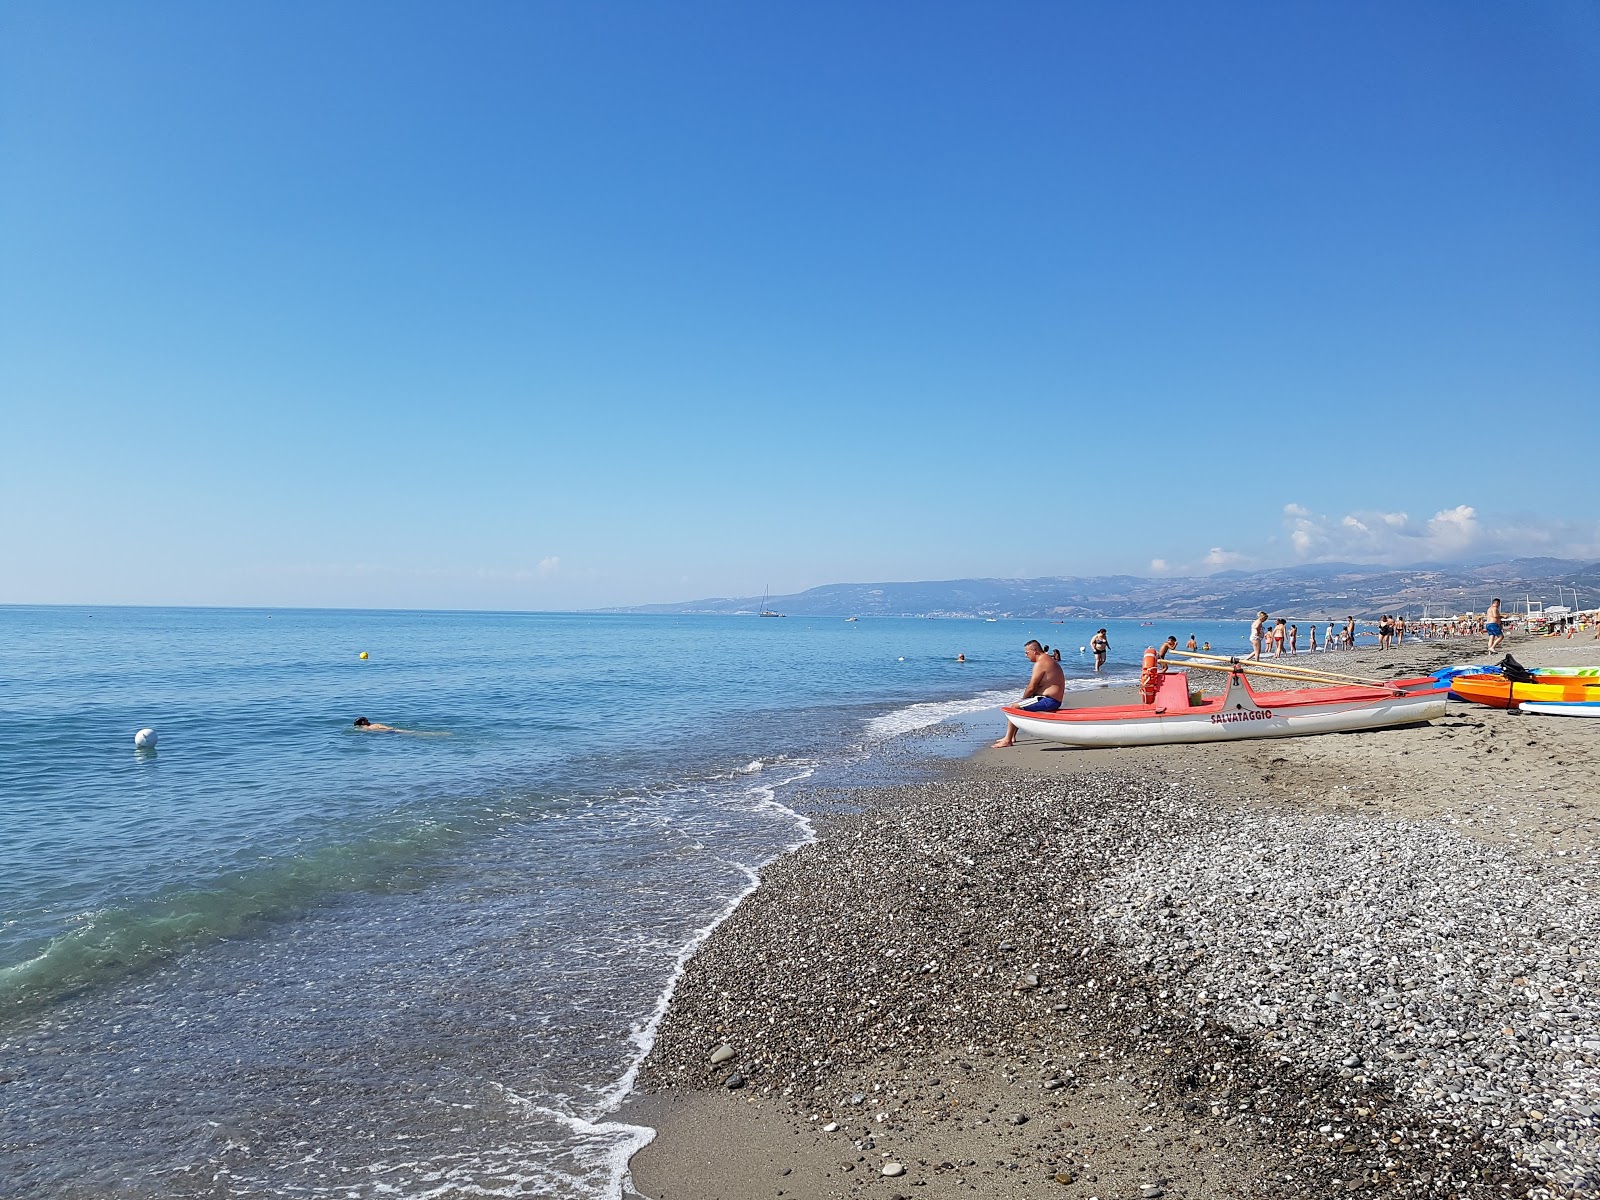 Nova Siri Scalo beach'in fotoğrafı kahverengi kum yüzey ile